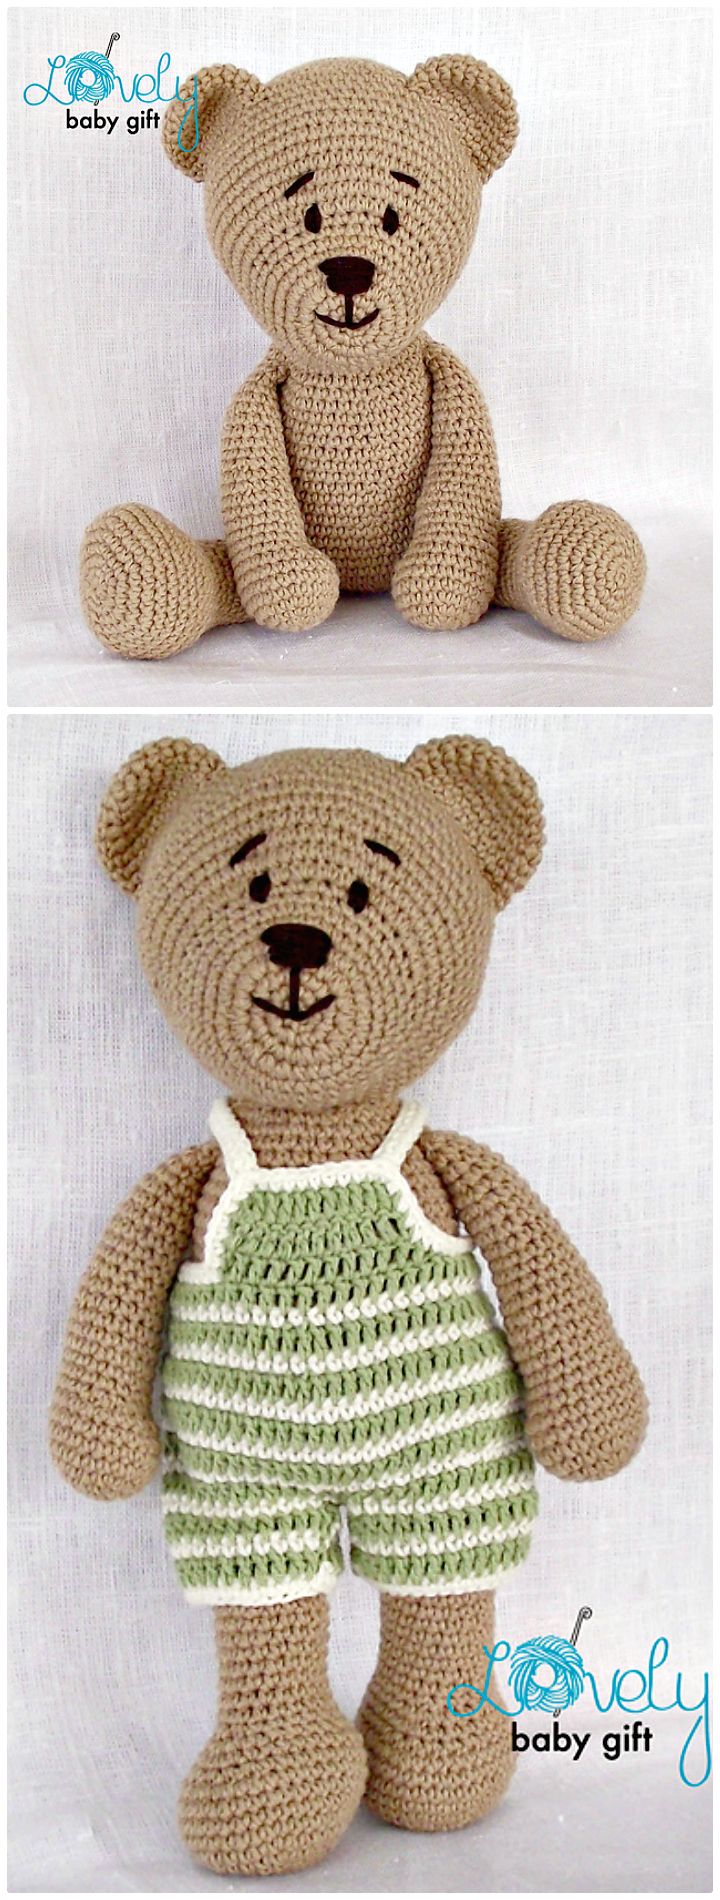 25 Free Crochet Teddy Bear Patterns - Crochet Patterns